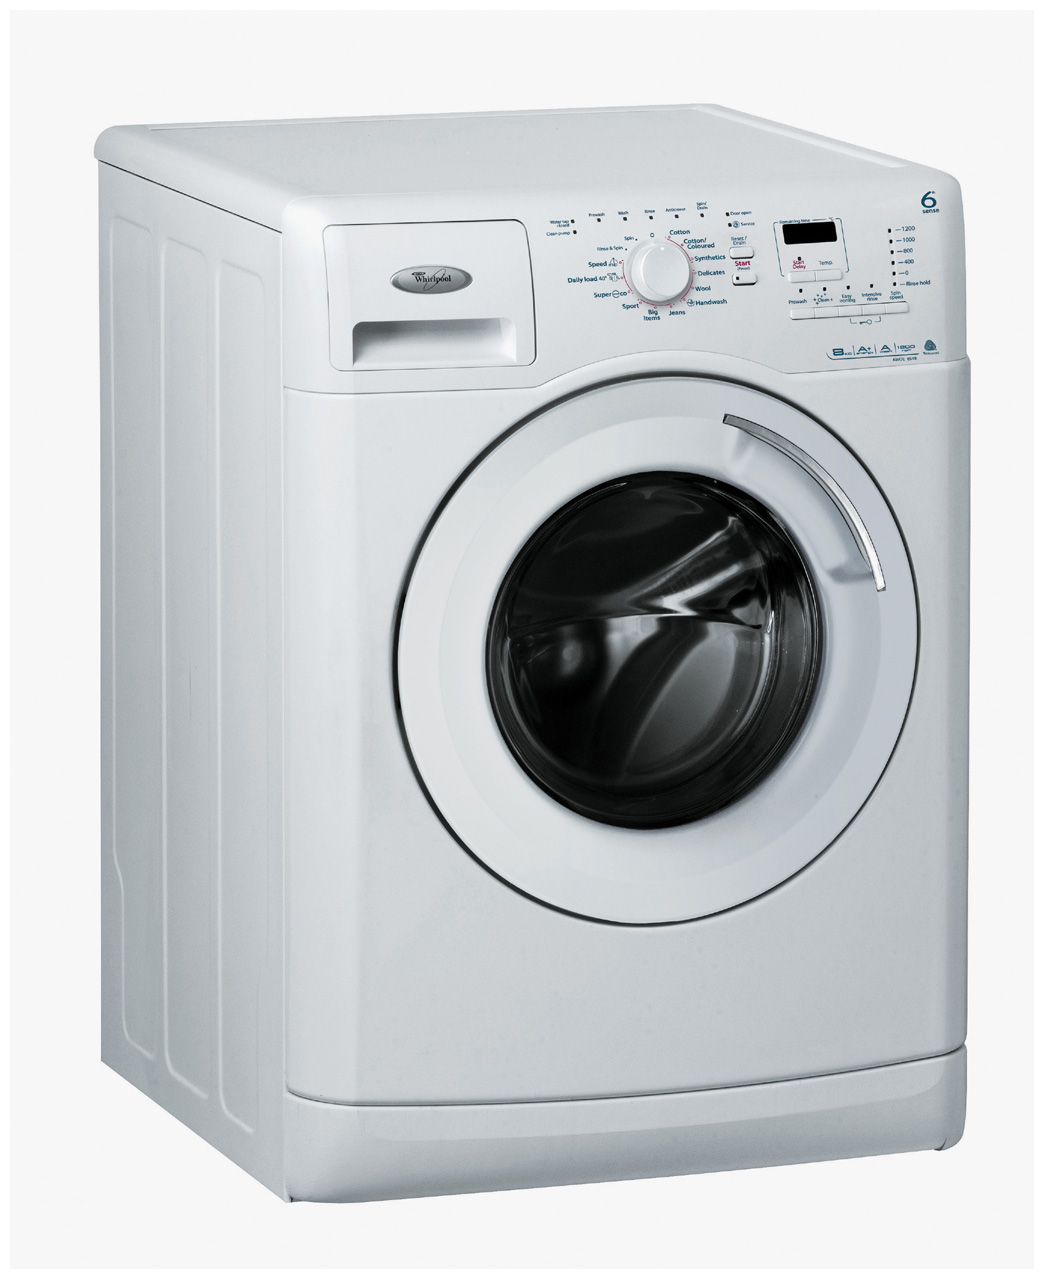 service washing machine ernakulam aluva angamaly kochi vytilla